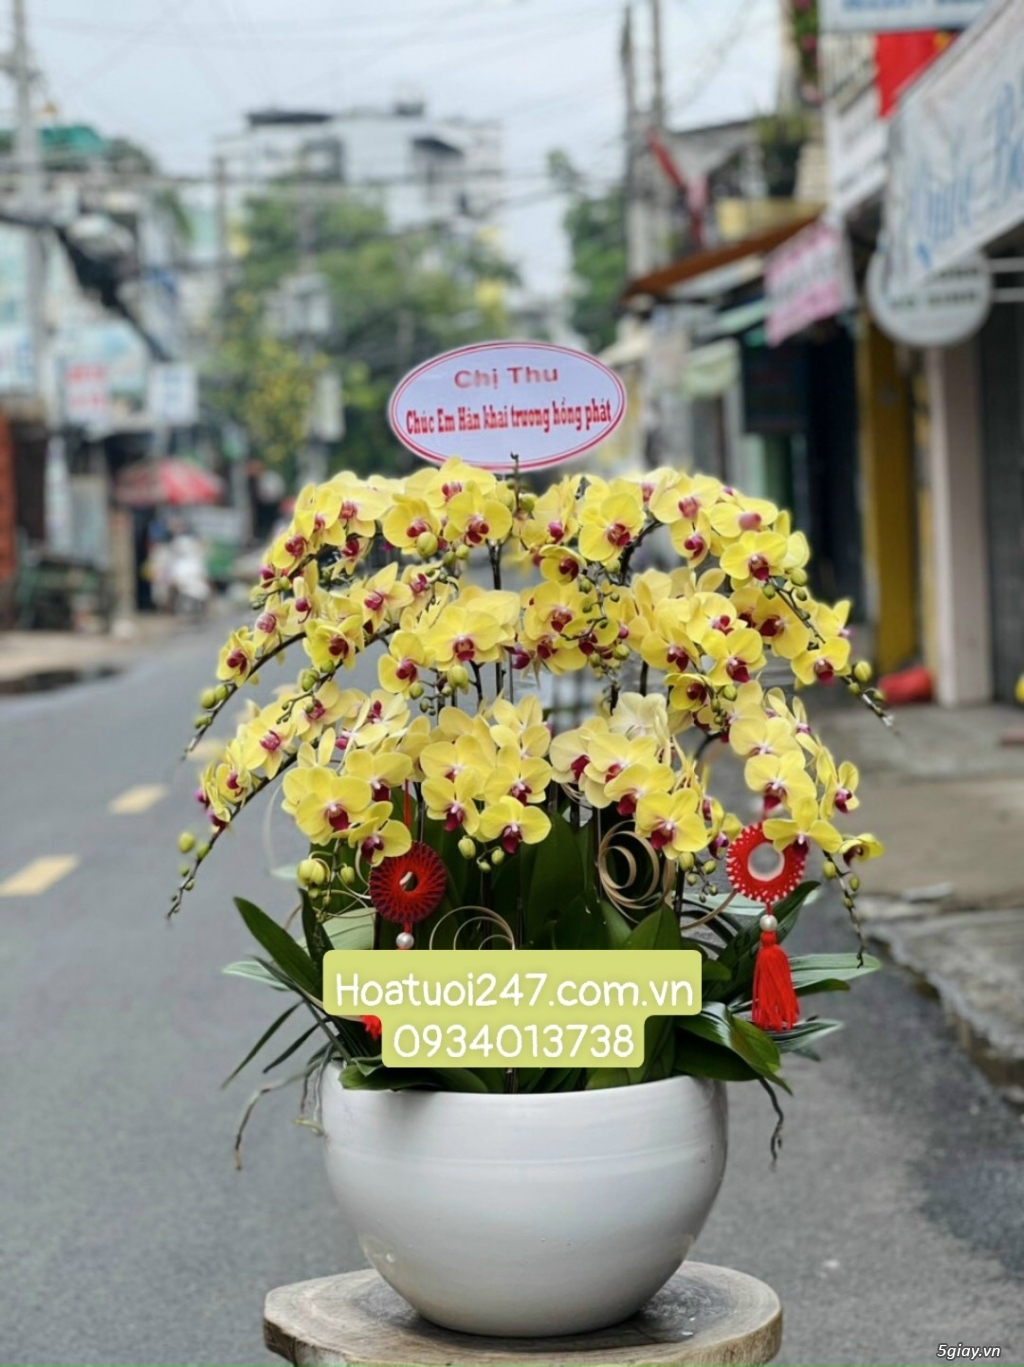 Vườn hoa tươi Lan Hồ Điệp 247 ấn tượng giữa lòng Sài Gòn - 2